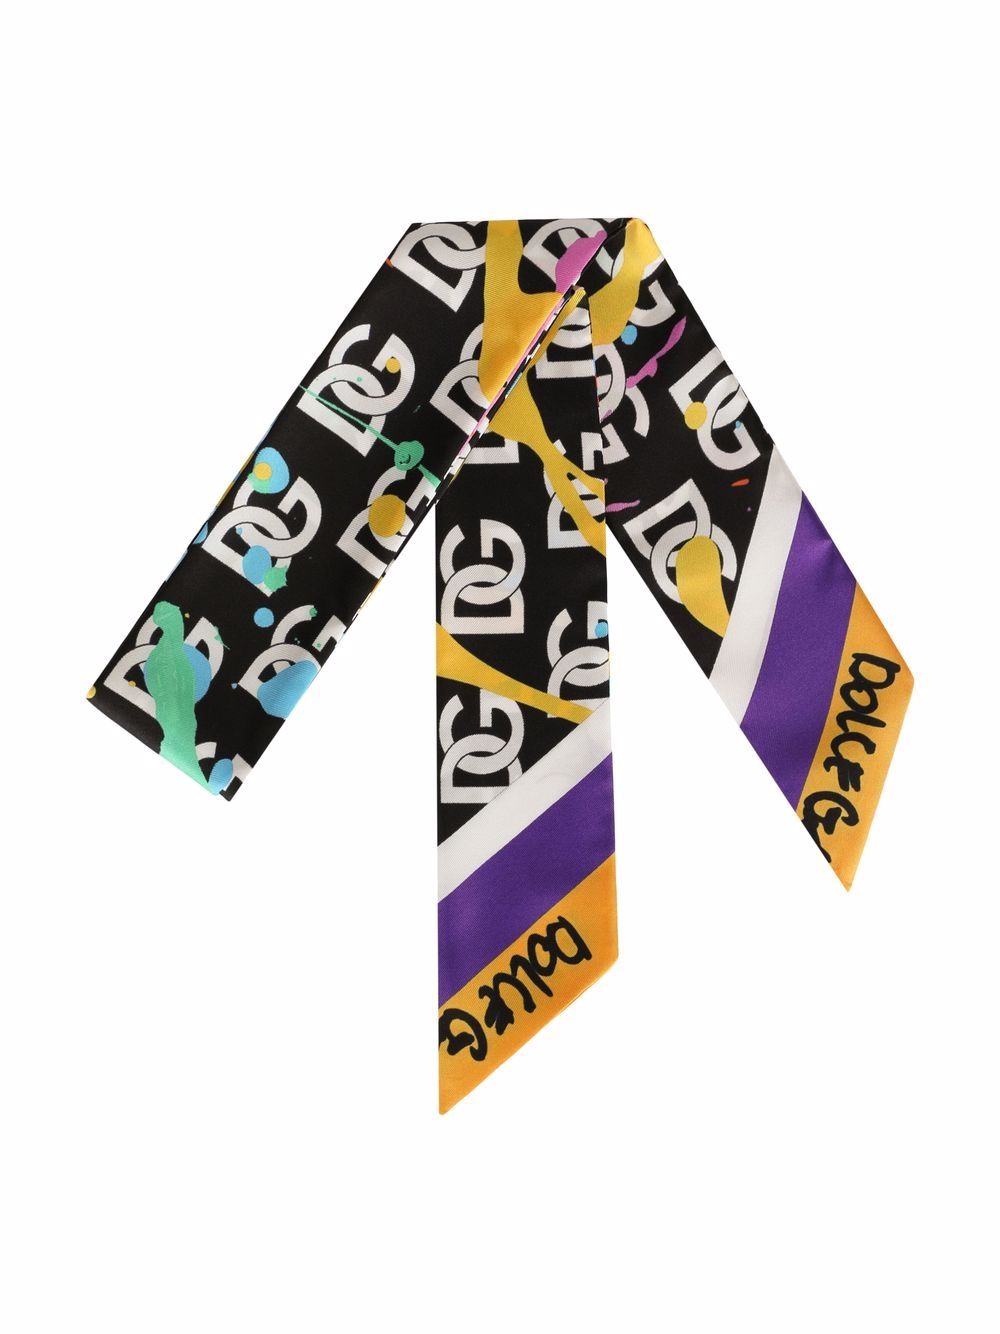 фото Dolce & gabbana шелковый шарф с логотипом dg и эффектом разбрызганной краски